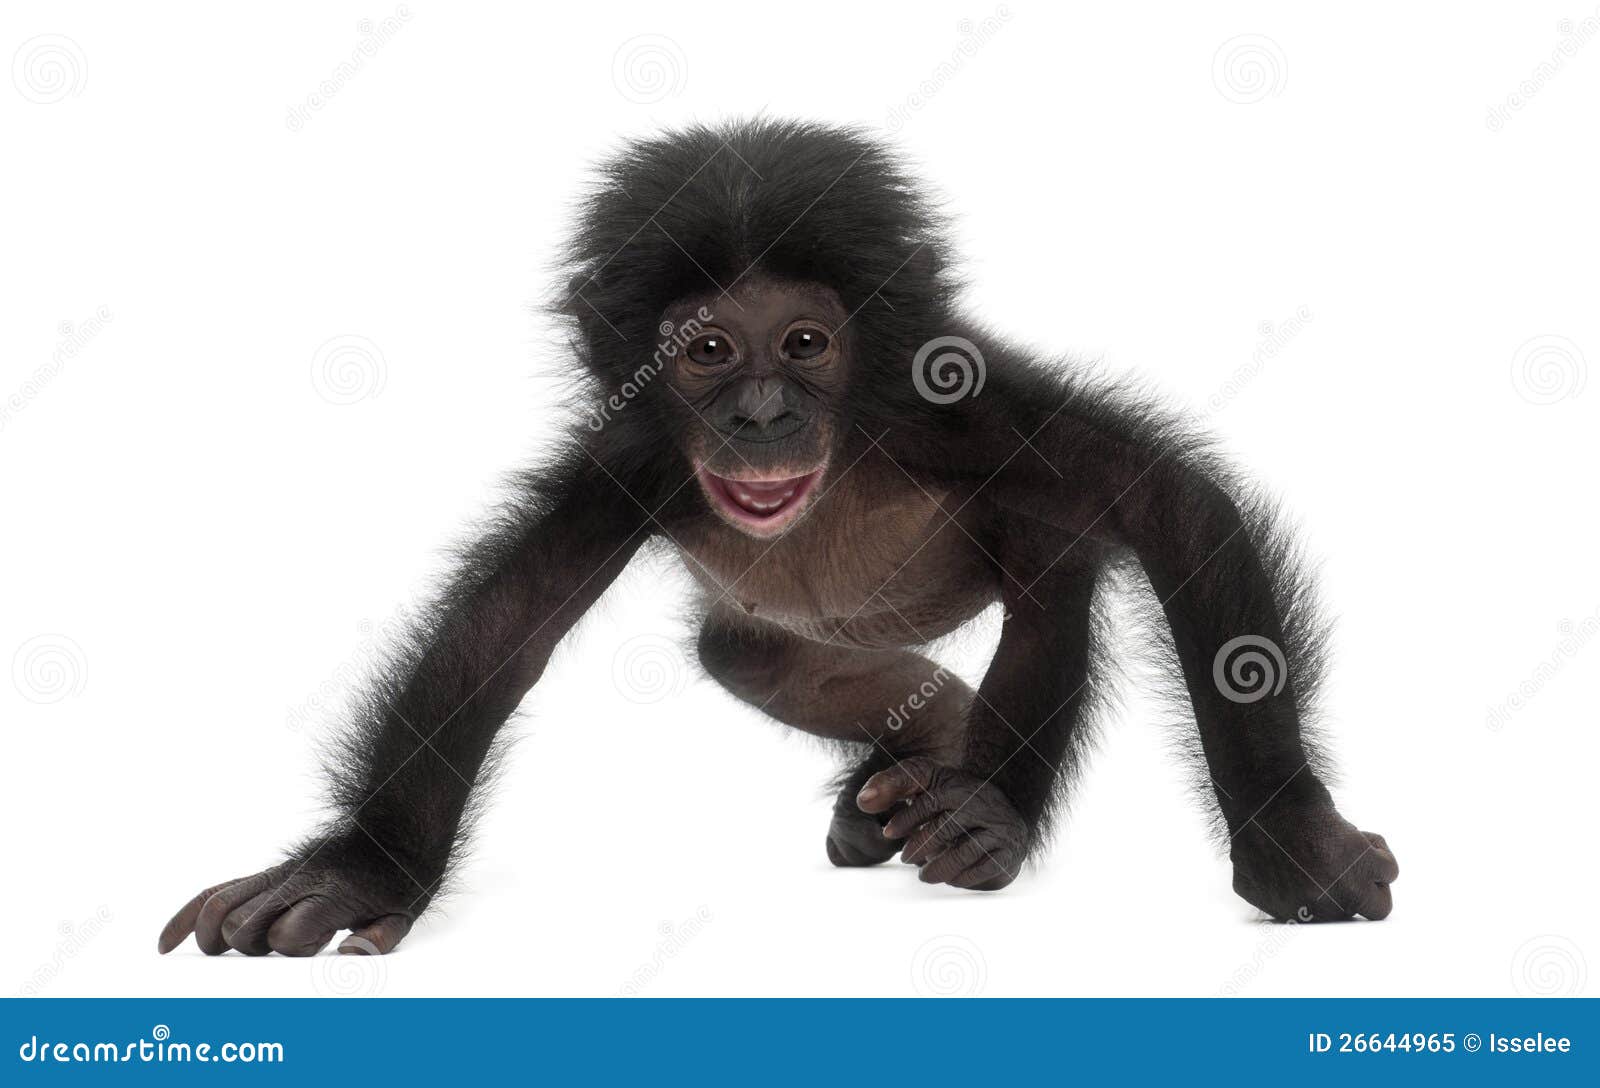 baby bonobo, pan paniscus, 4 months old, walking